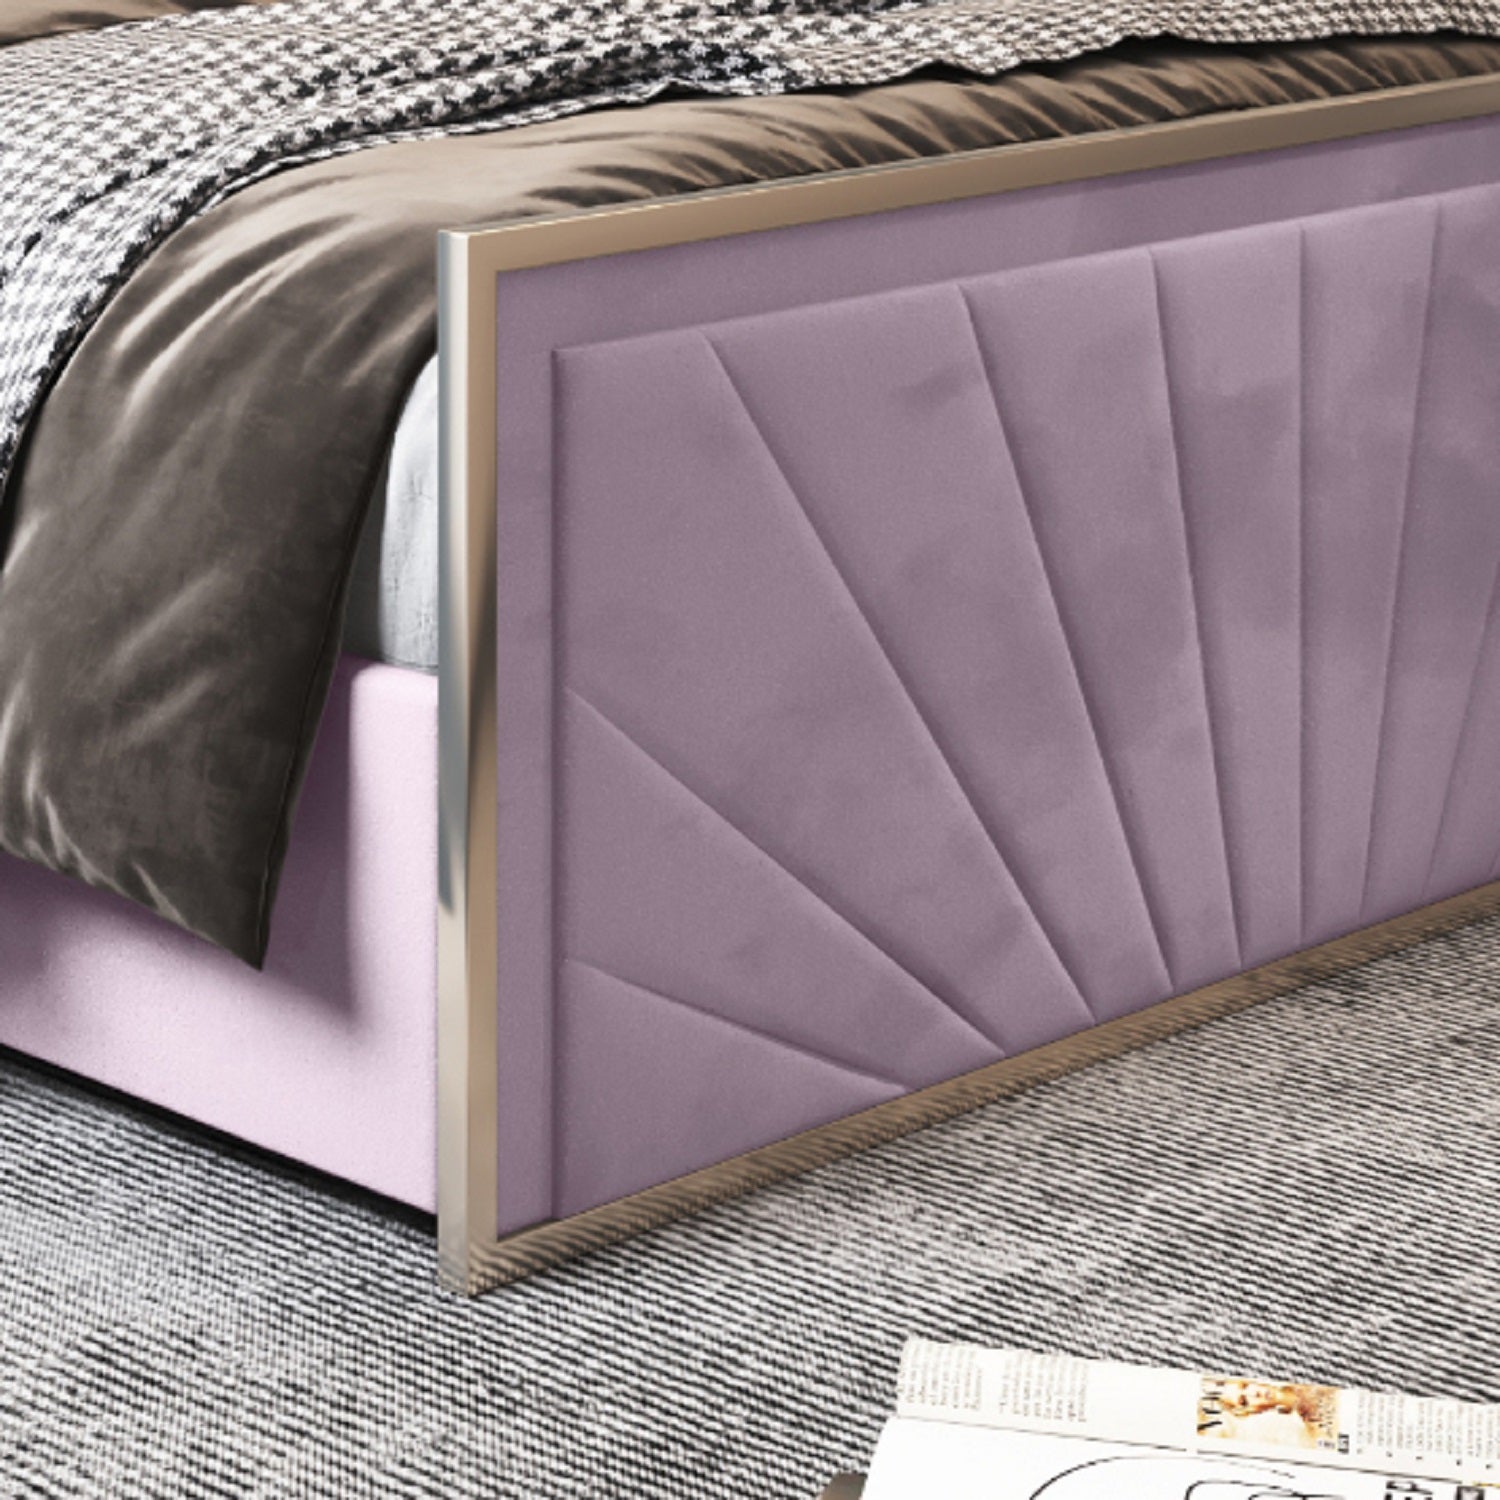 Roxy Upholstered Soft Velvet Metal Bed Frame